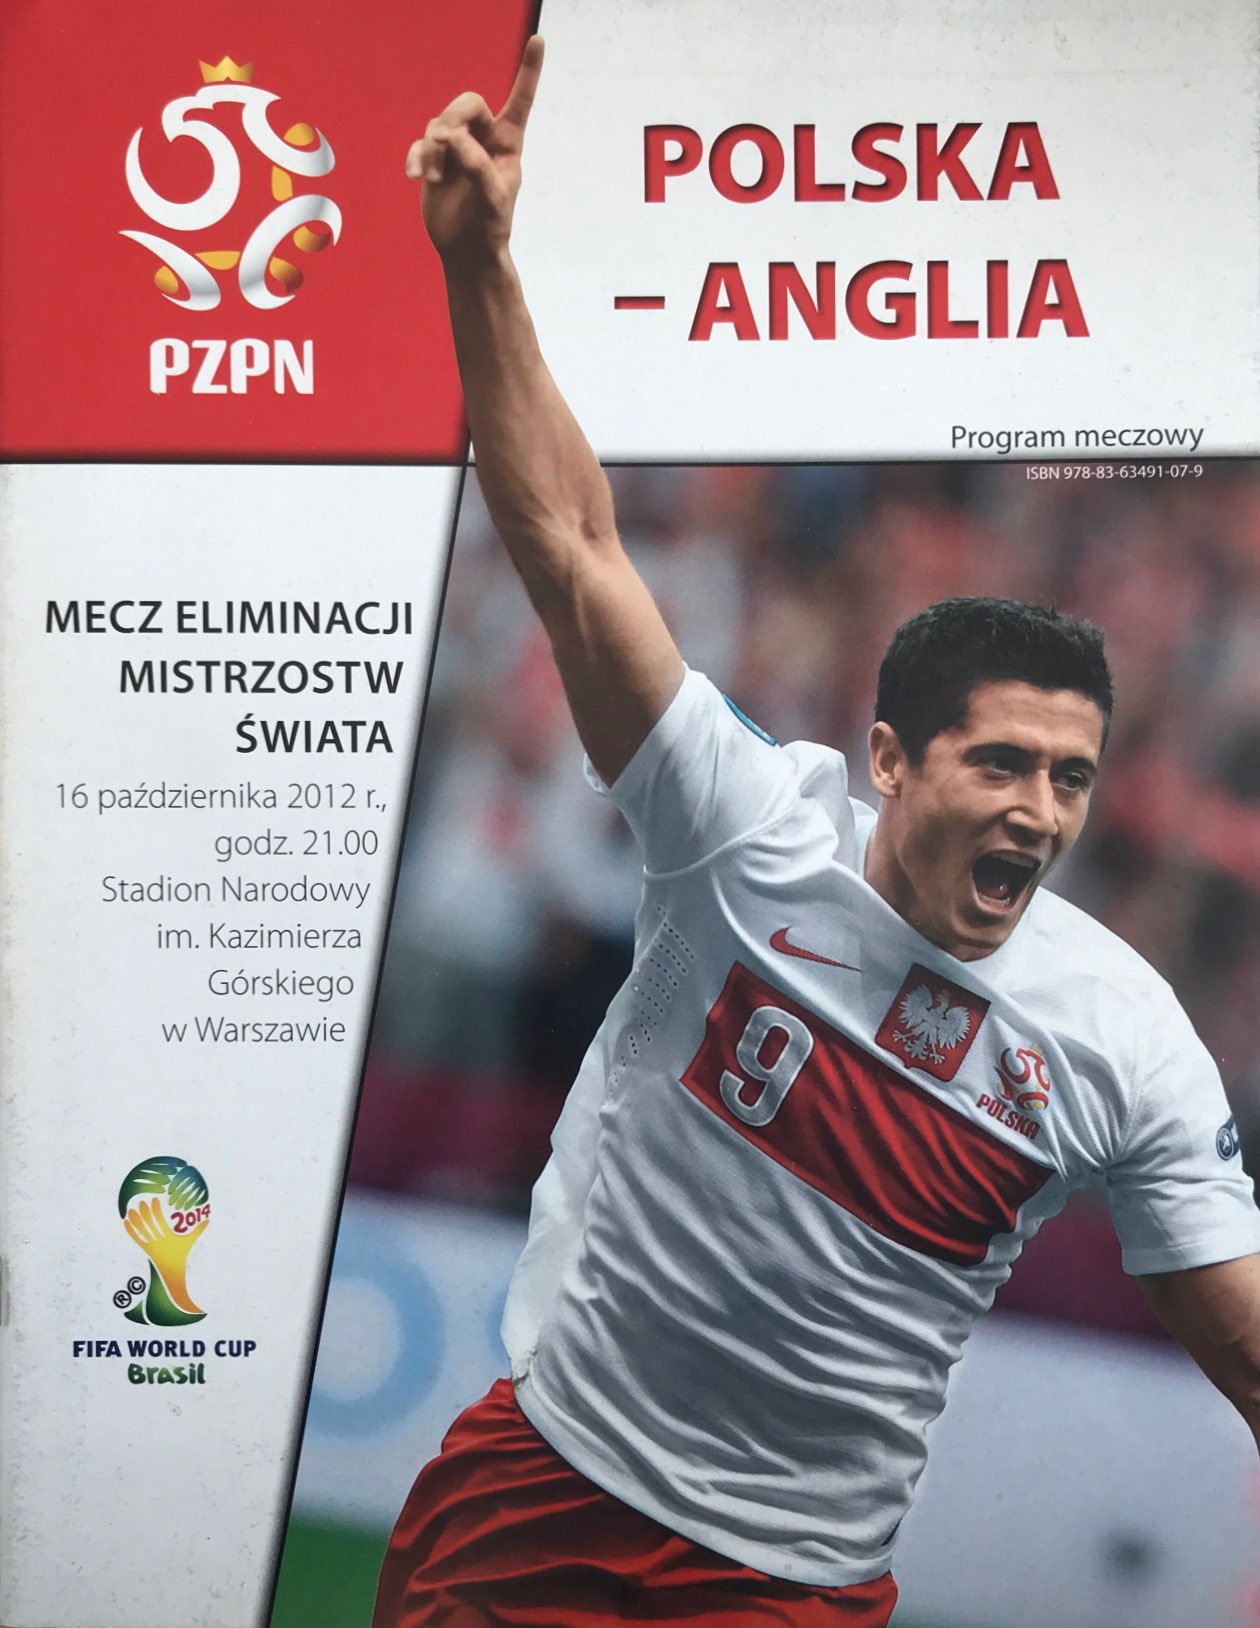 Program meczowy Polska - Anglia 1:1 (16.10.2012)